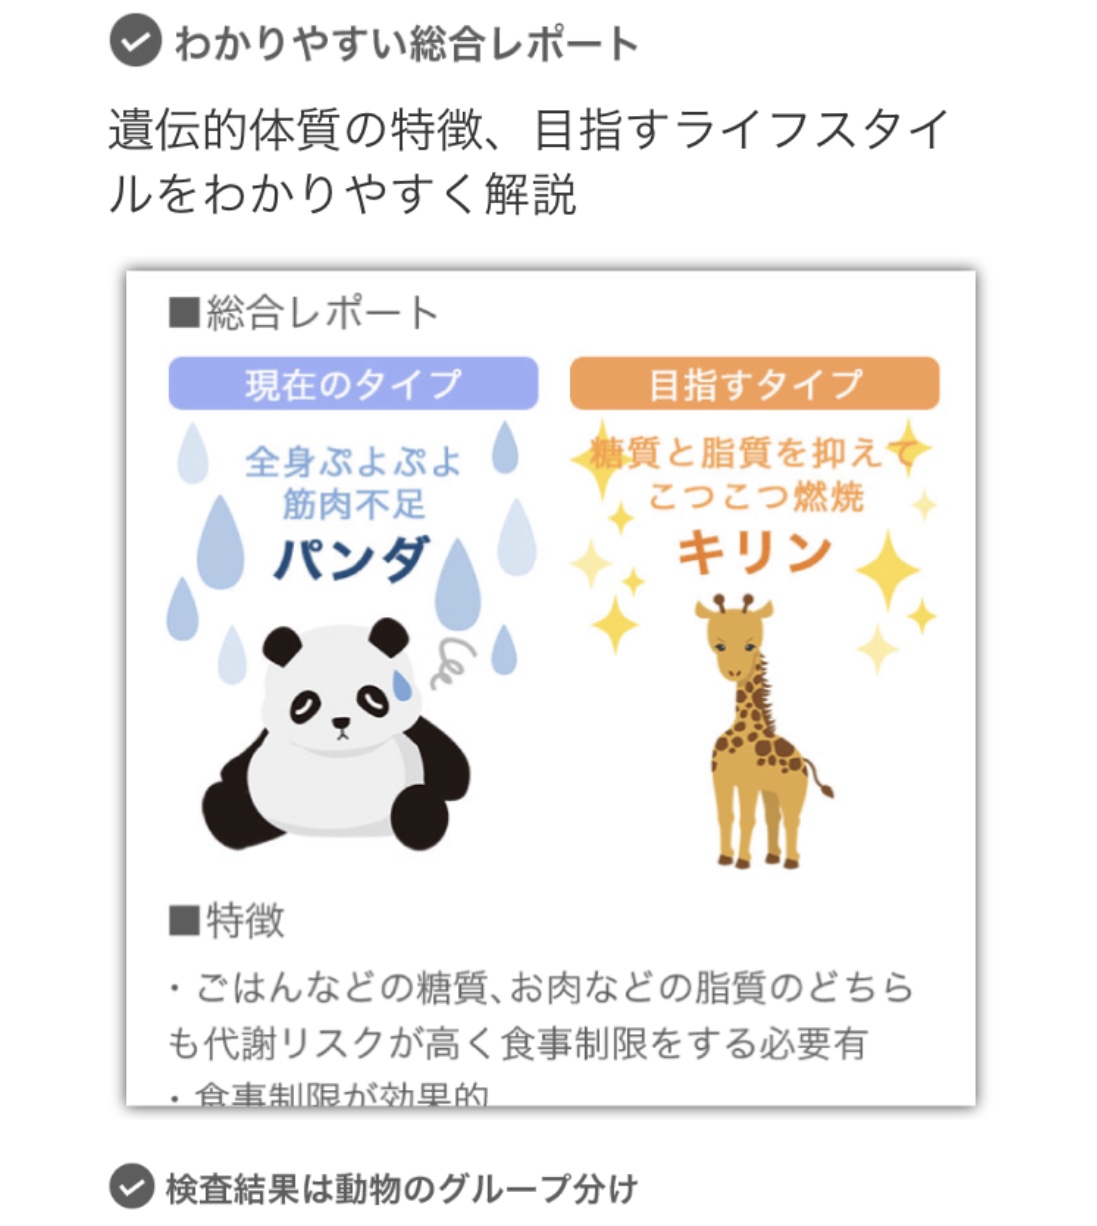 スマートフォンアプリの画面に表示されるパンダとキリンのイラスト